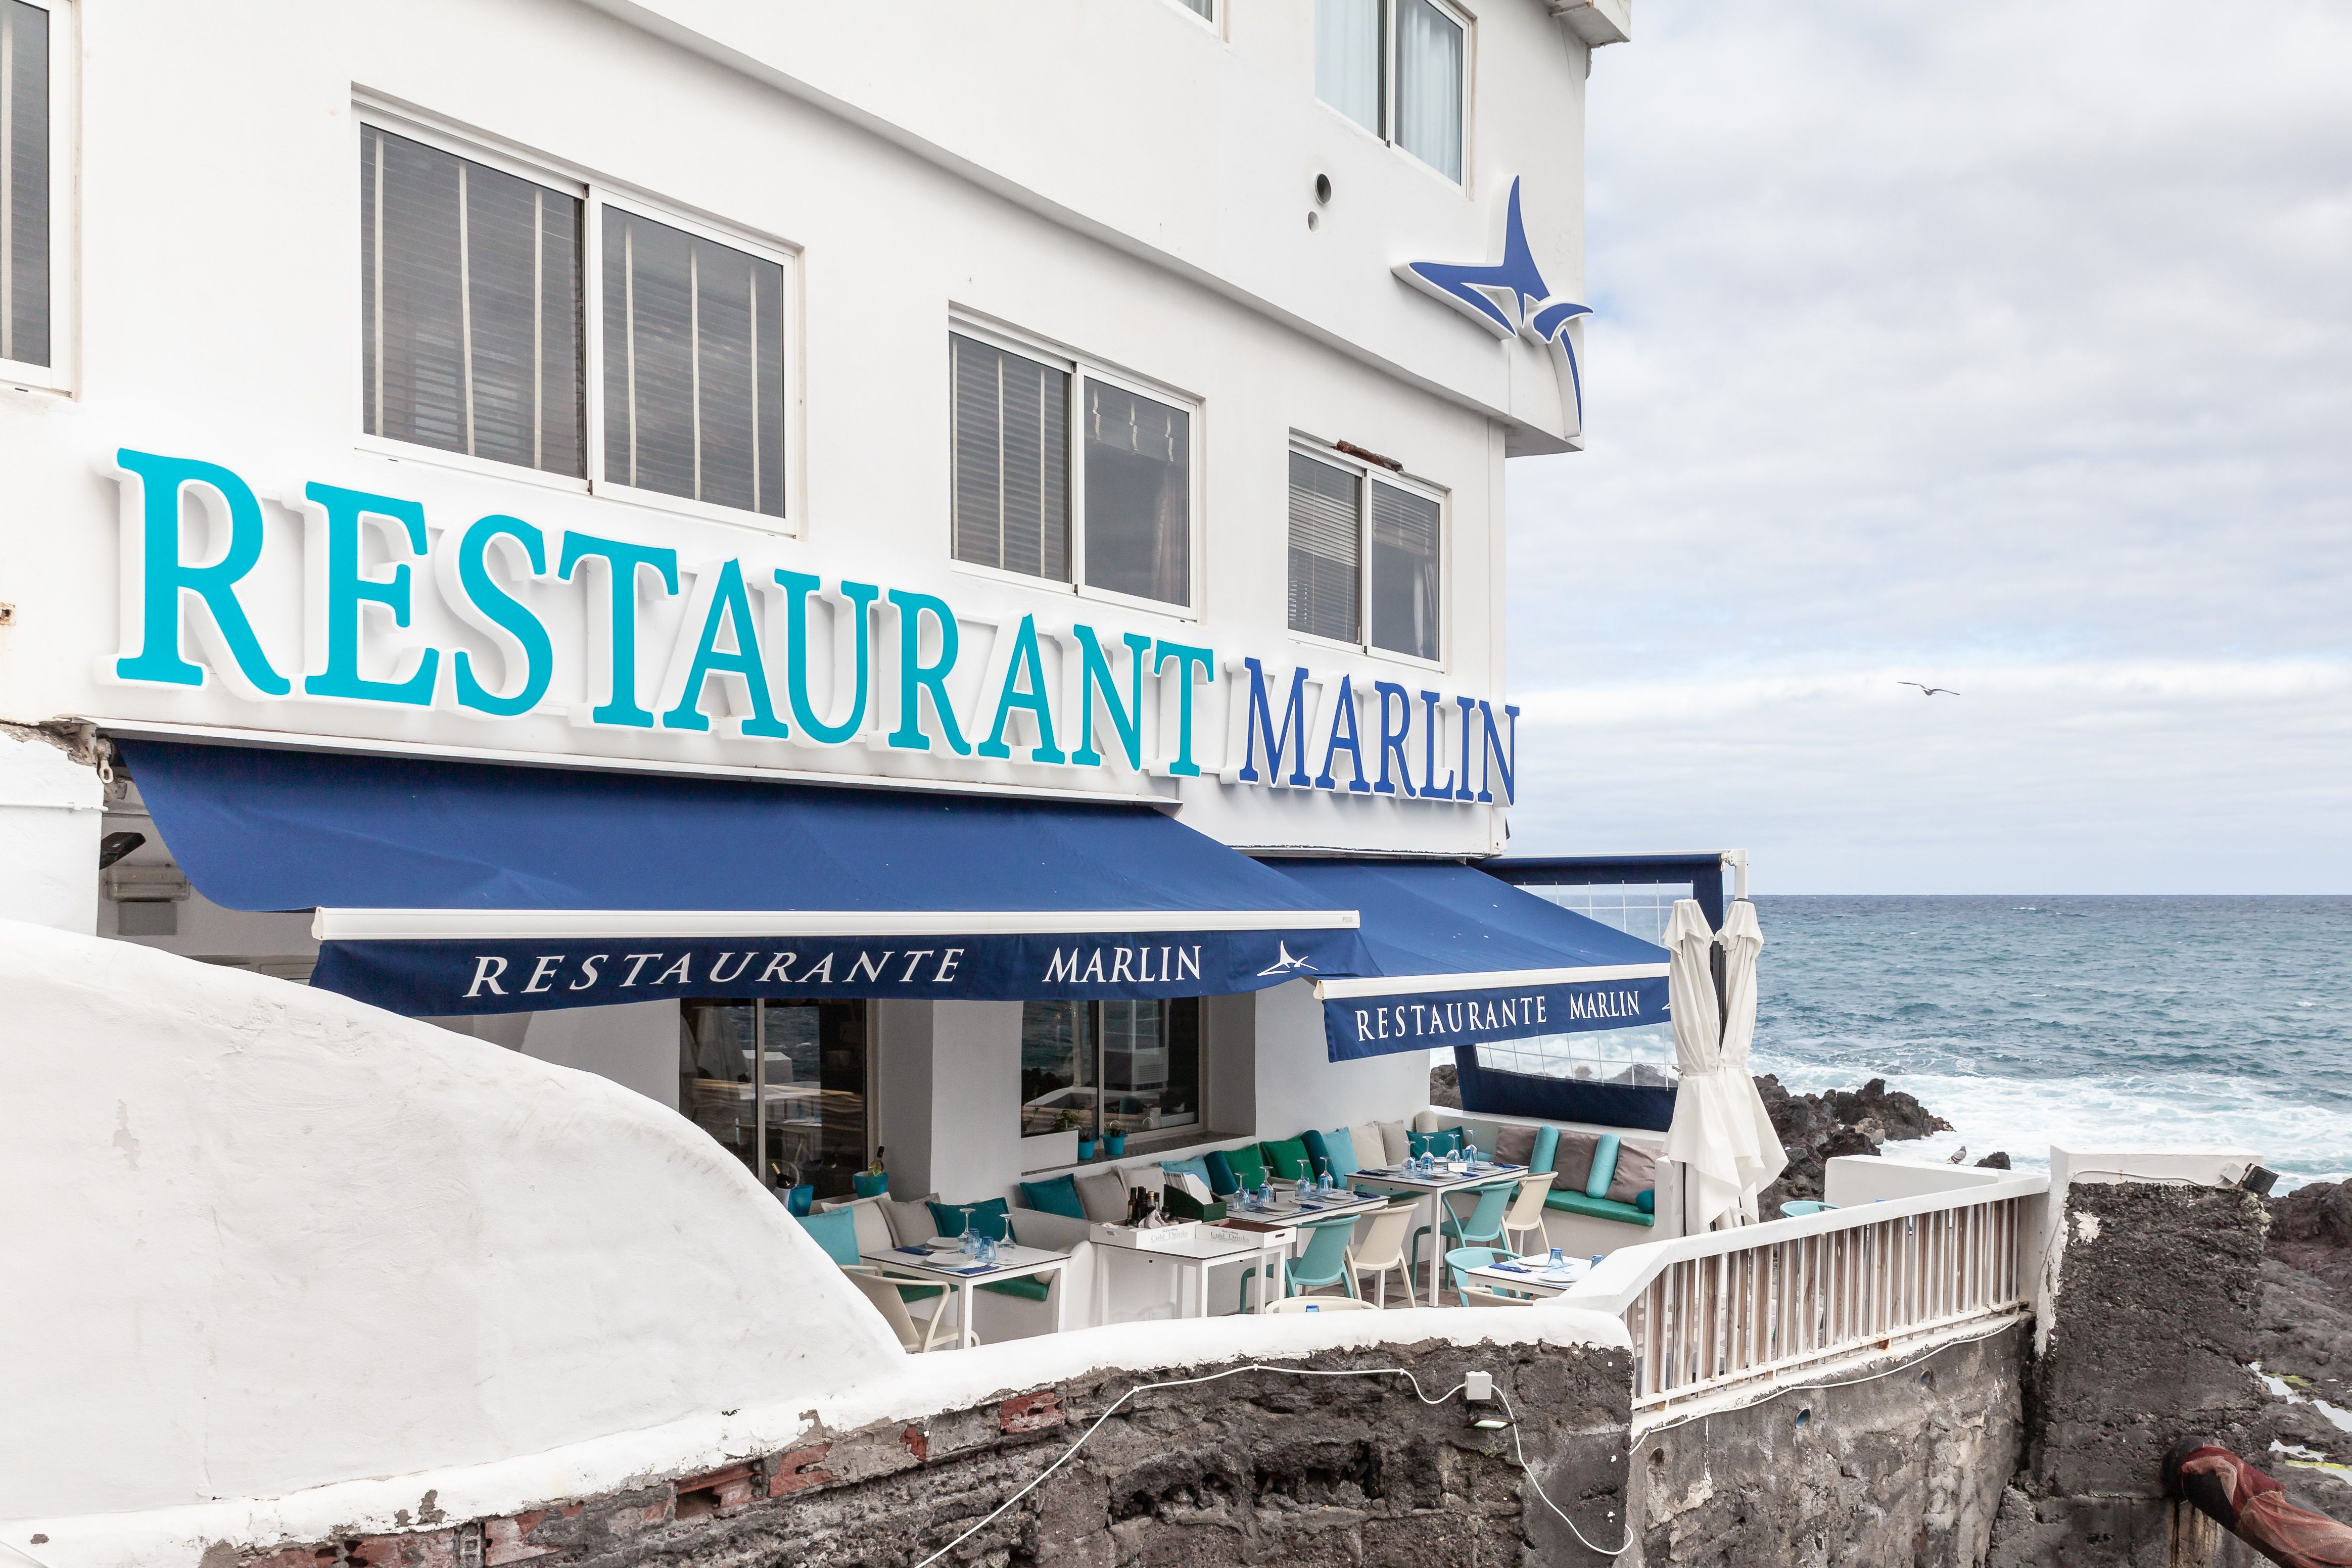 Foto 1 de Restaurante en Puerto de la Cruz | Restaurante Marlin